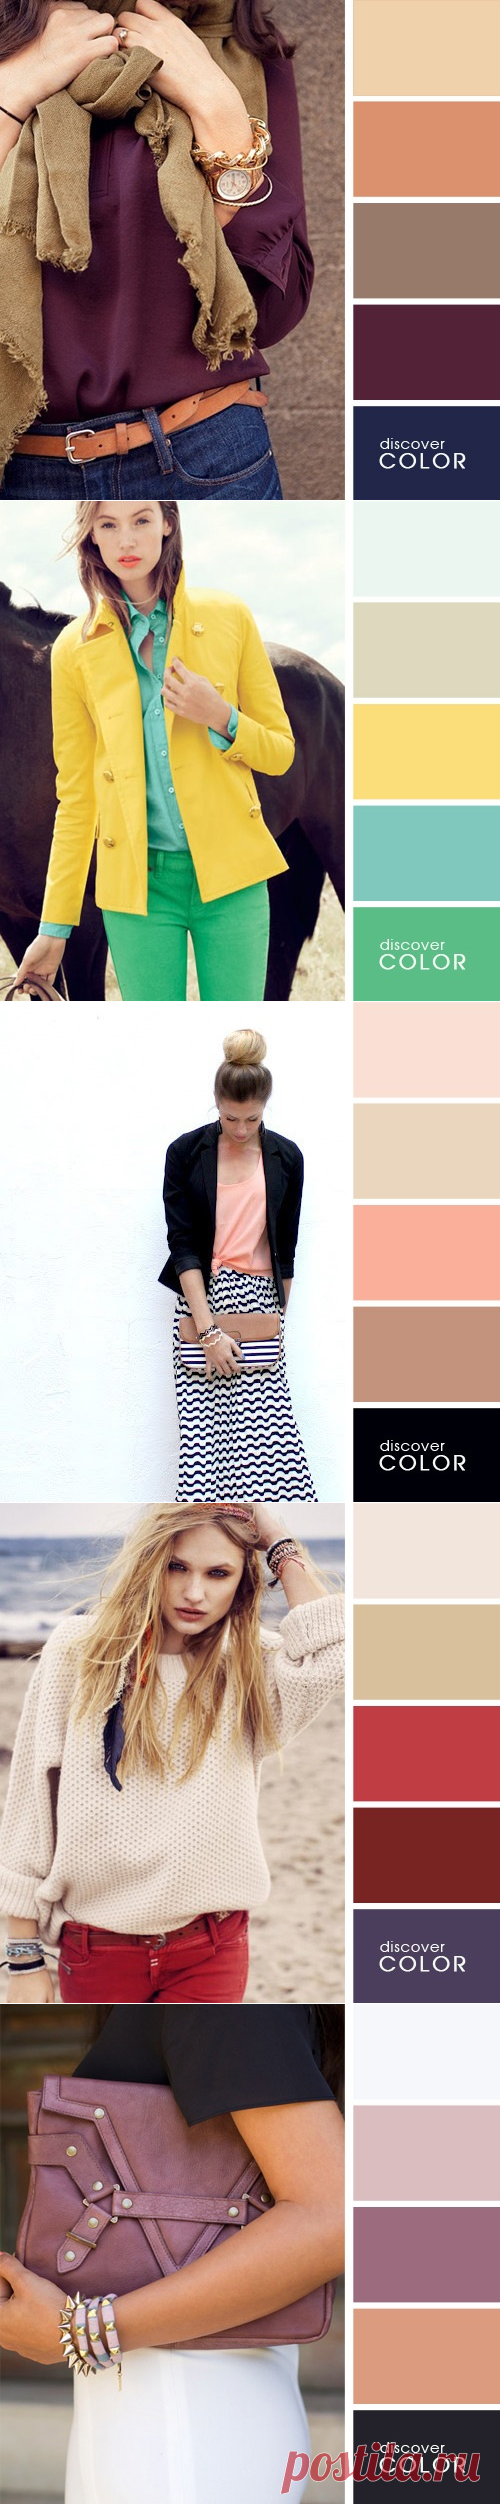 20 идеальных сочетаний цветов одежды для яркого образа – Фитнес для мозга